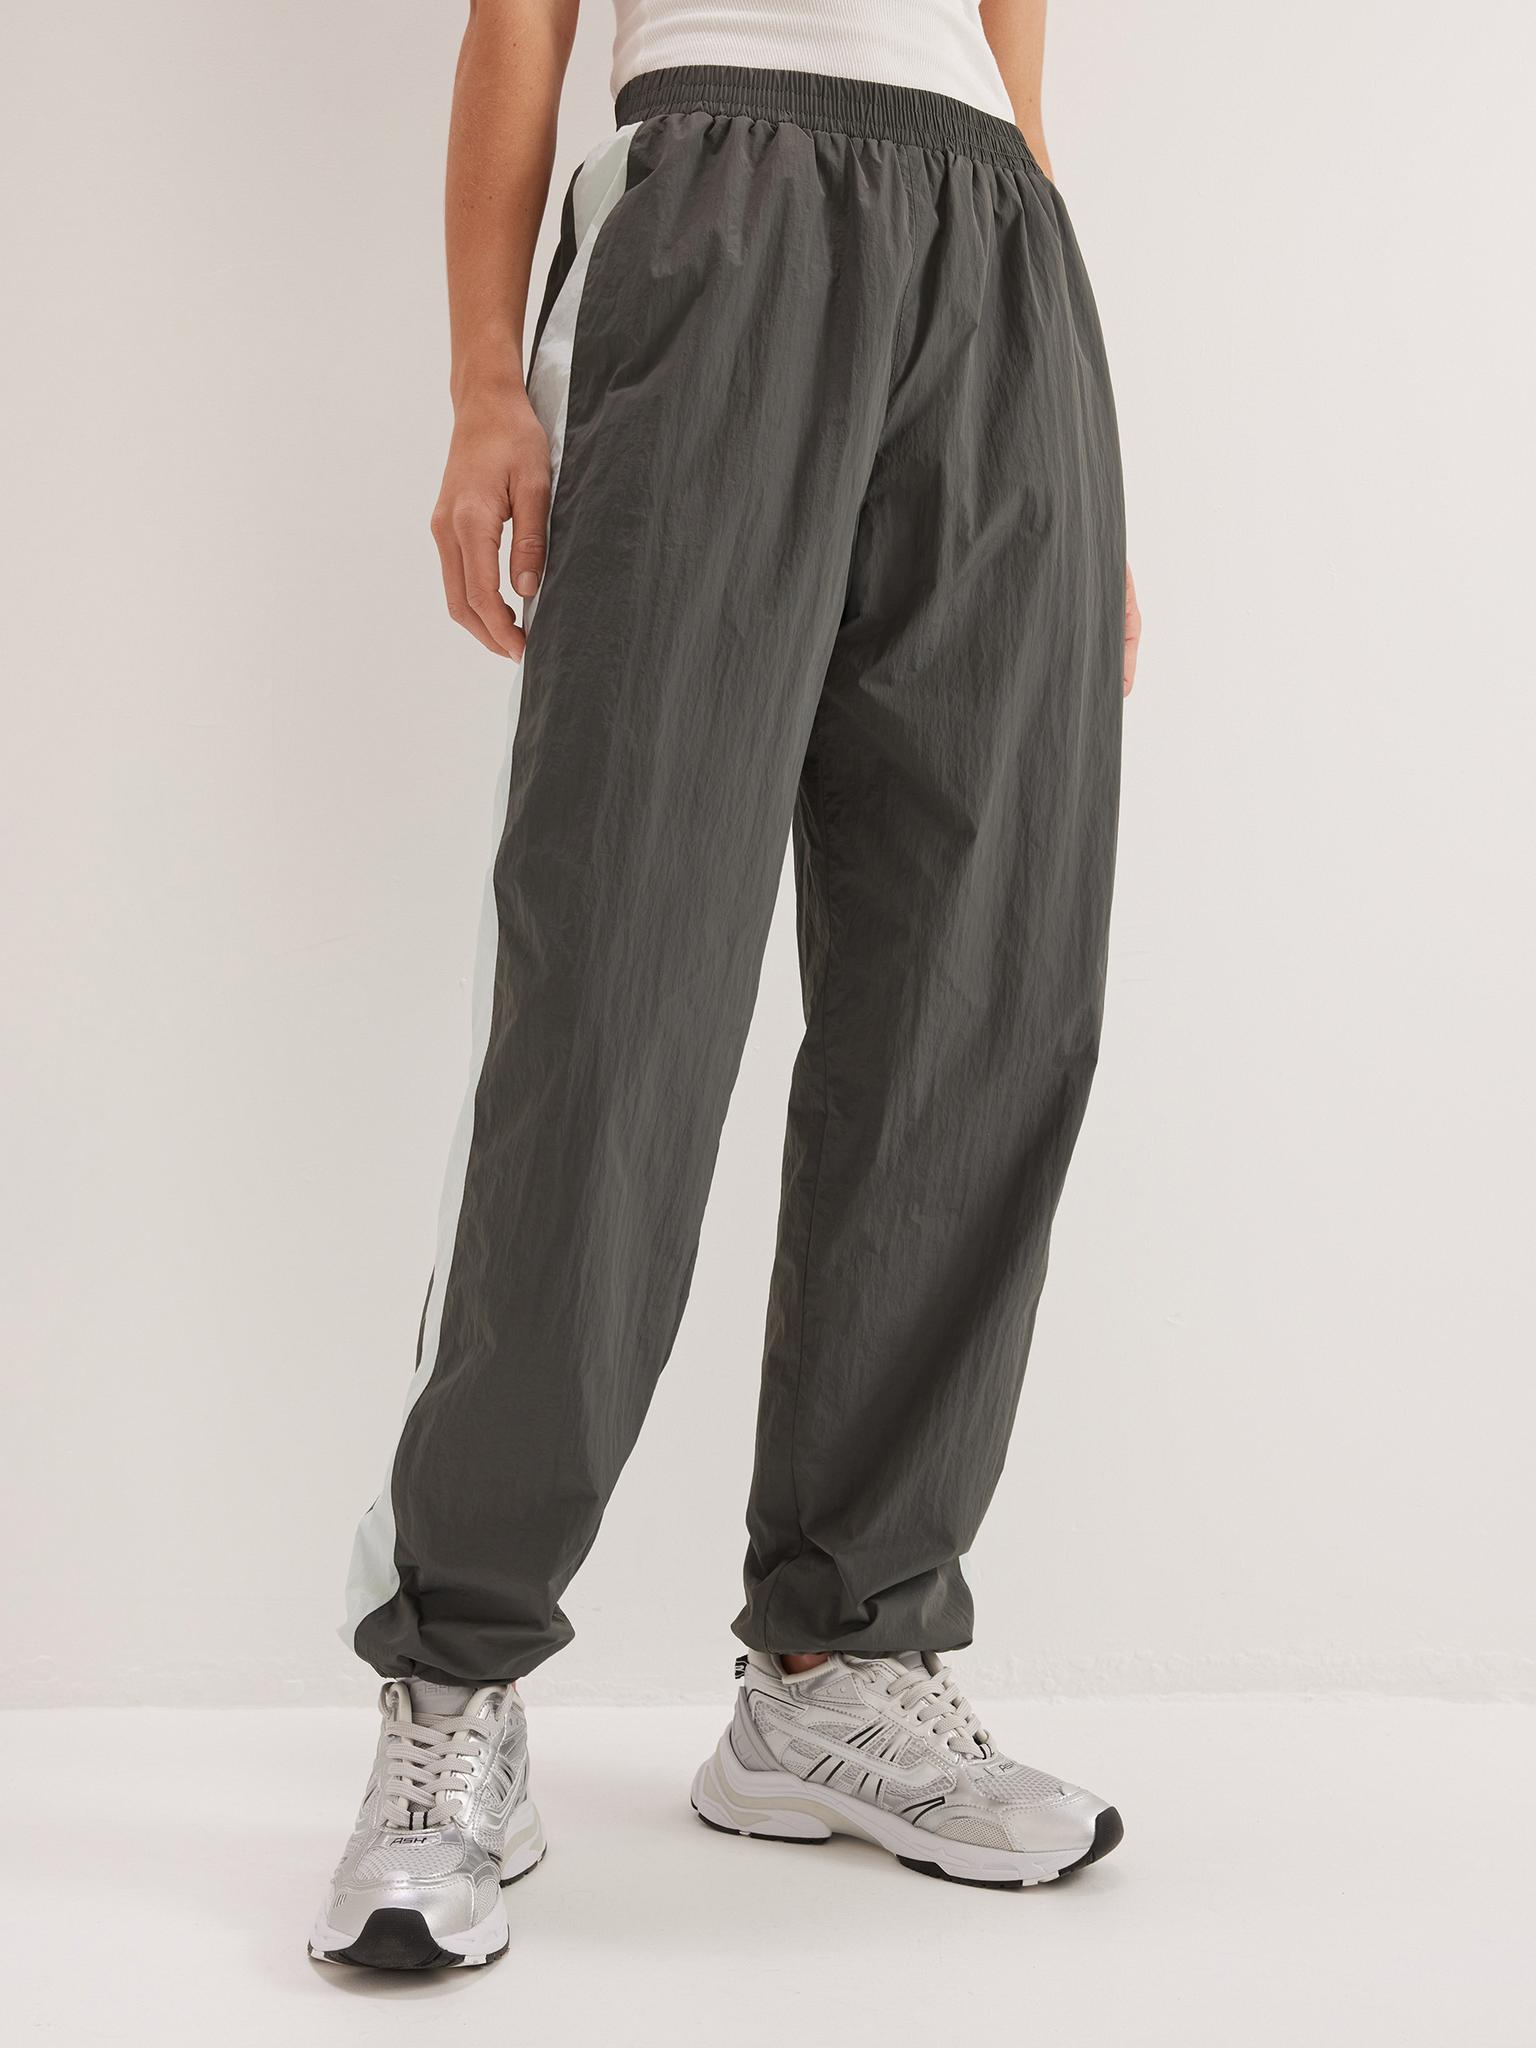 ОДЕЖДА \u003e Спортивные брюки графитового цвета с бирюзовой вставкой купить винтернет-магазине